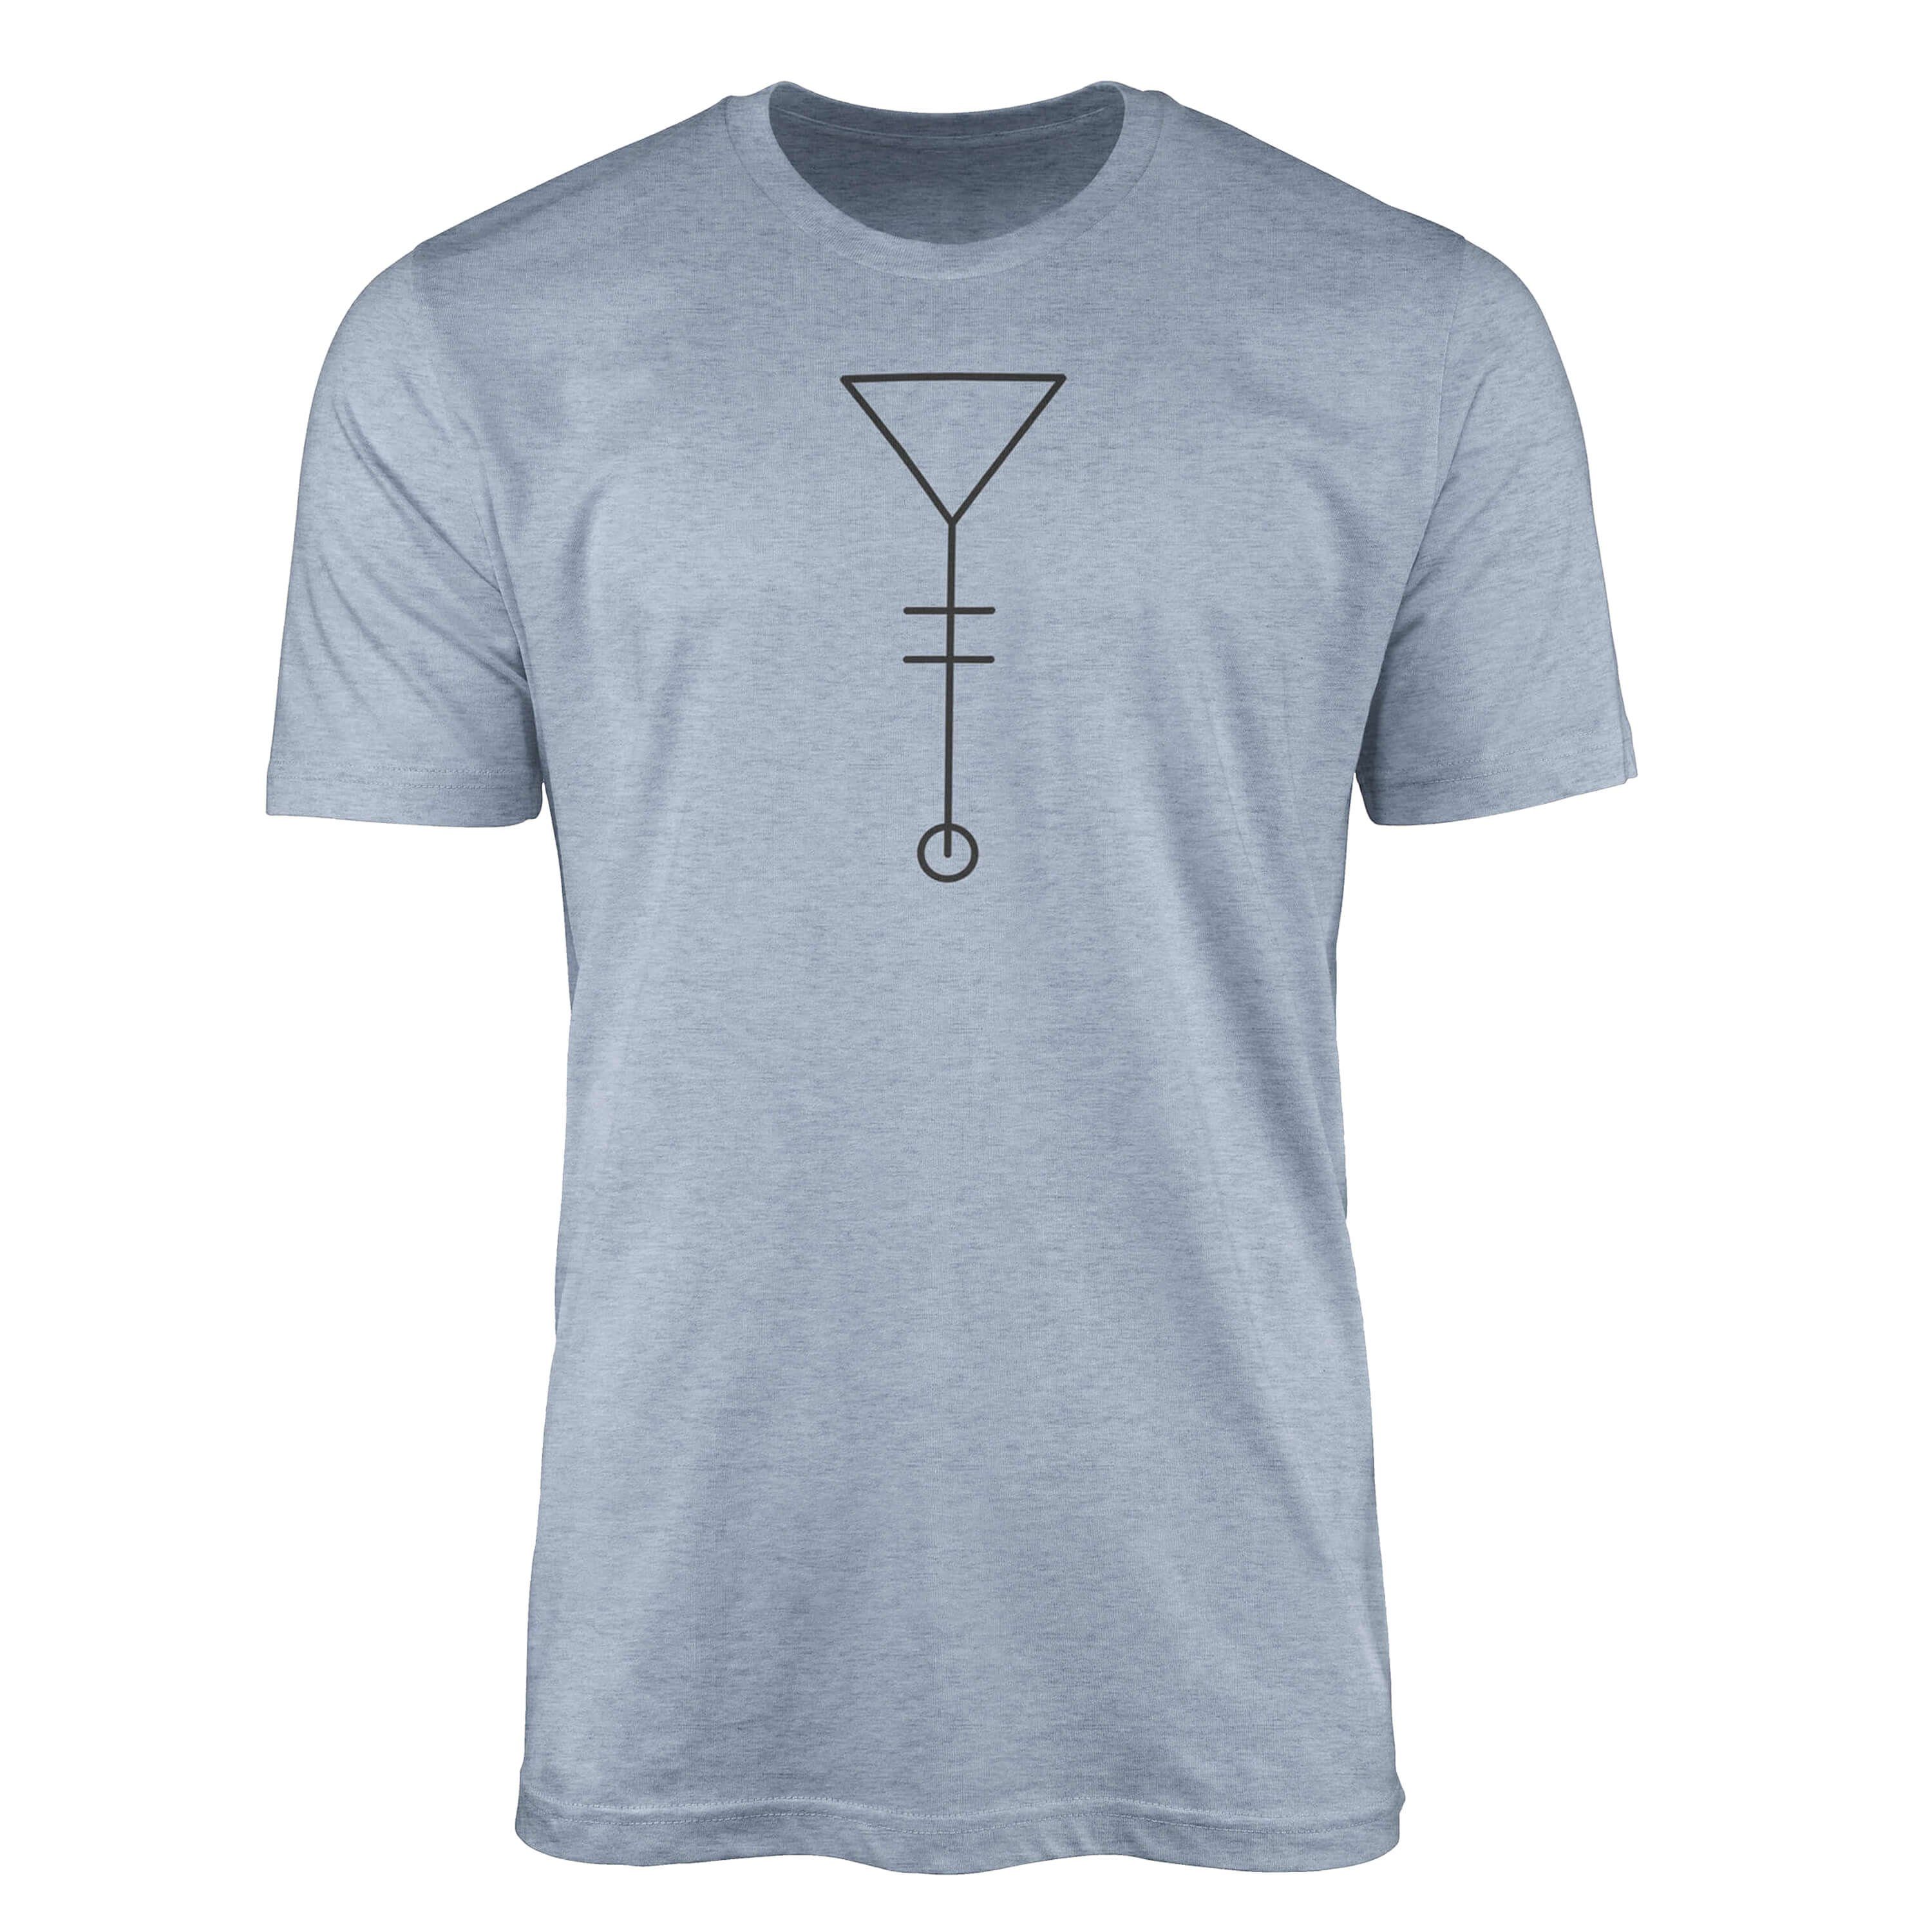 Alchemy T-Shirt Sinus angenehmer Tragekomfort Premium Stonewash Denim feine Serie No.0024 Symbole Art T-Shirt Struktur